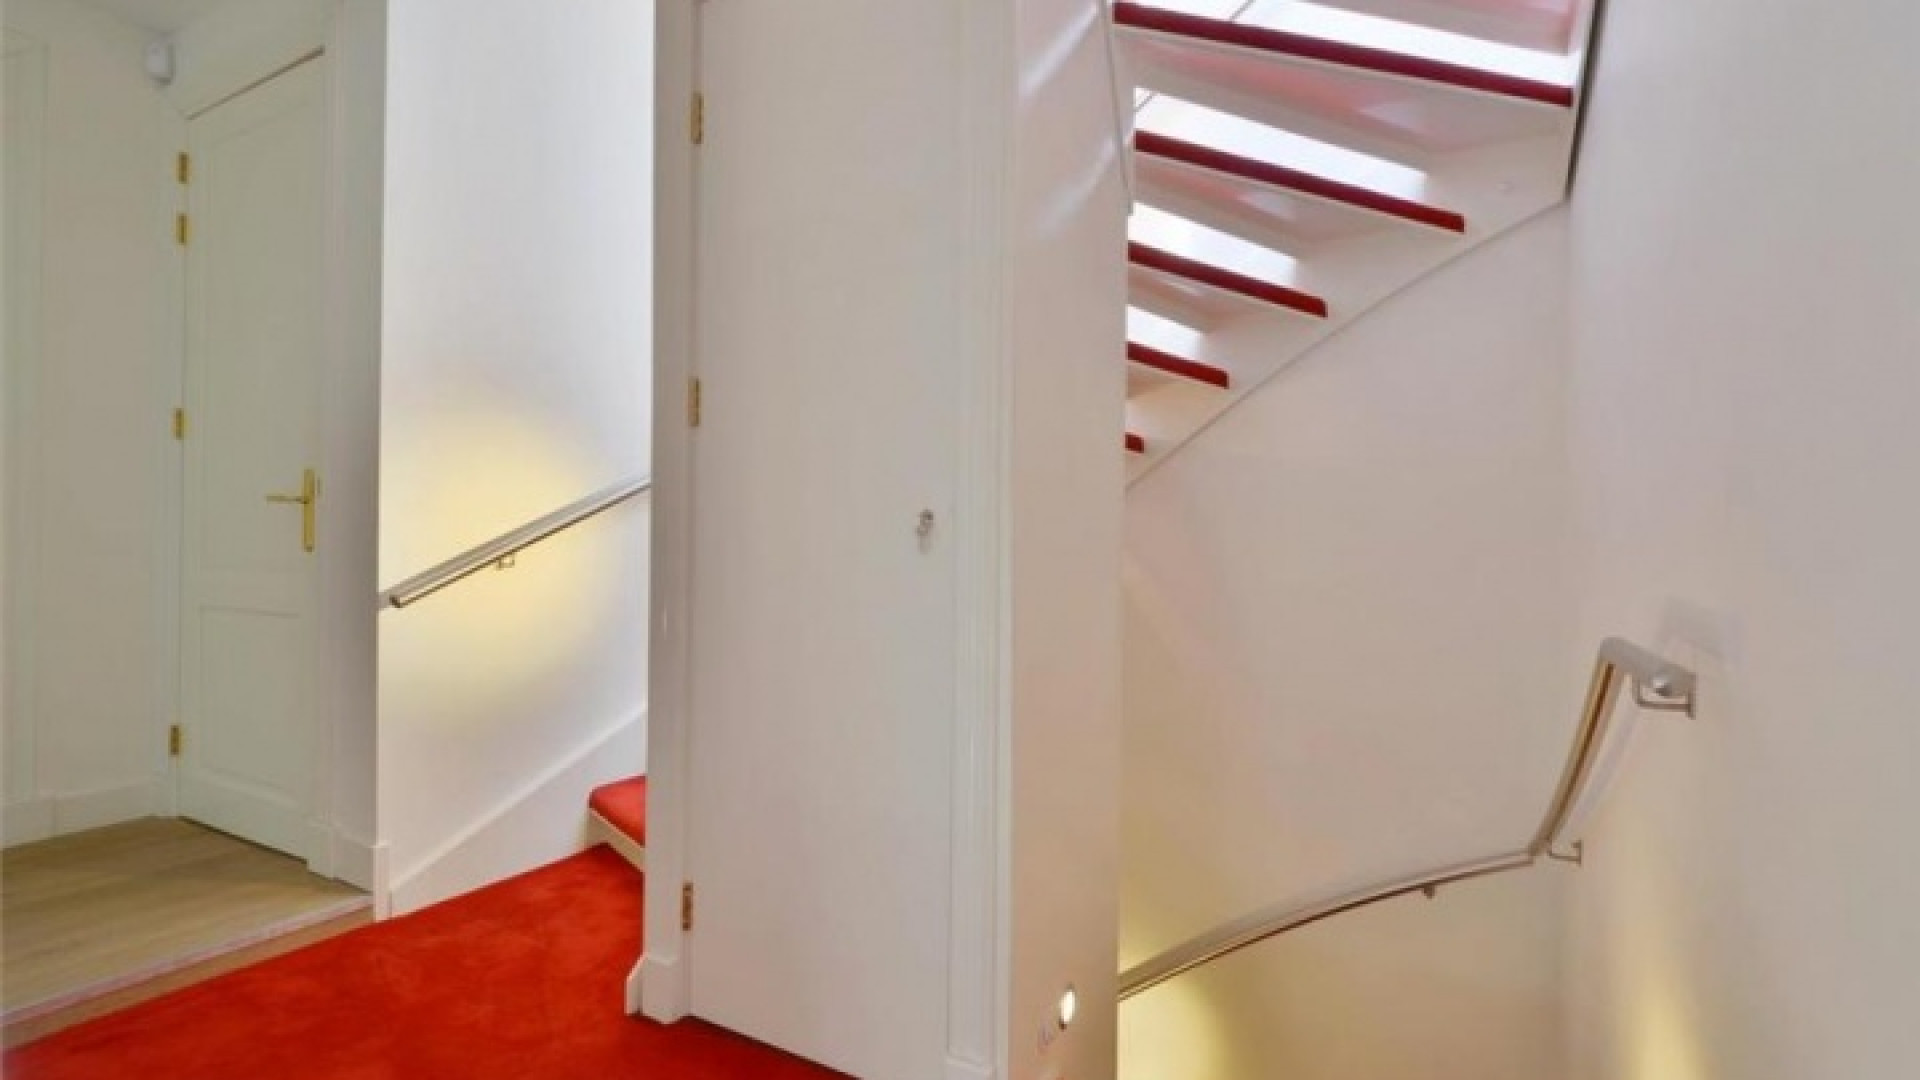 Frank Rijkaard zoekt huurder voor zijn luxe dubbele bovenhuis. Zie foto's 16